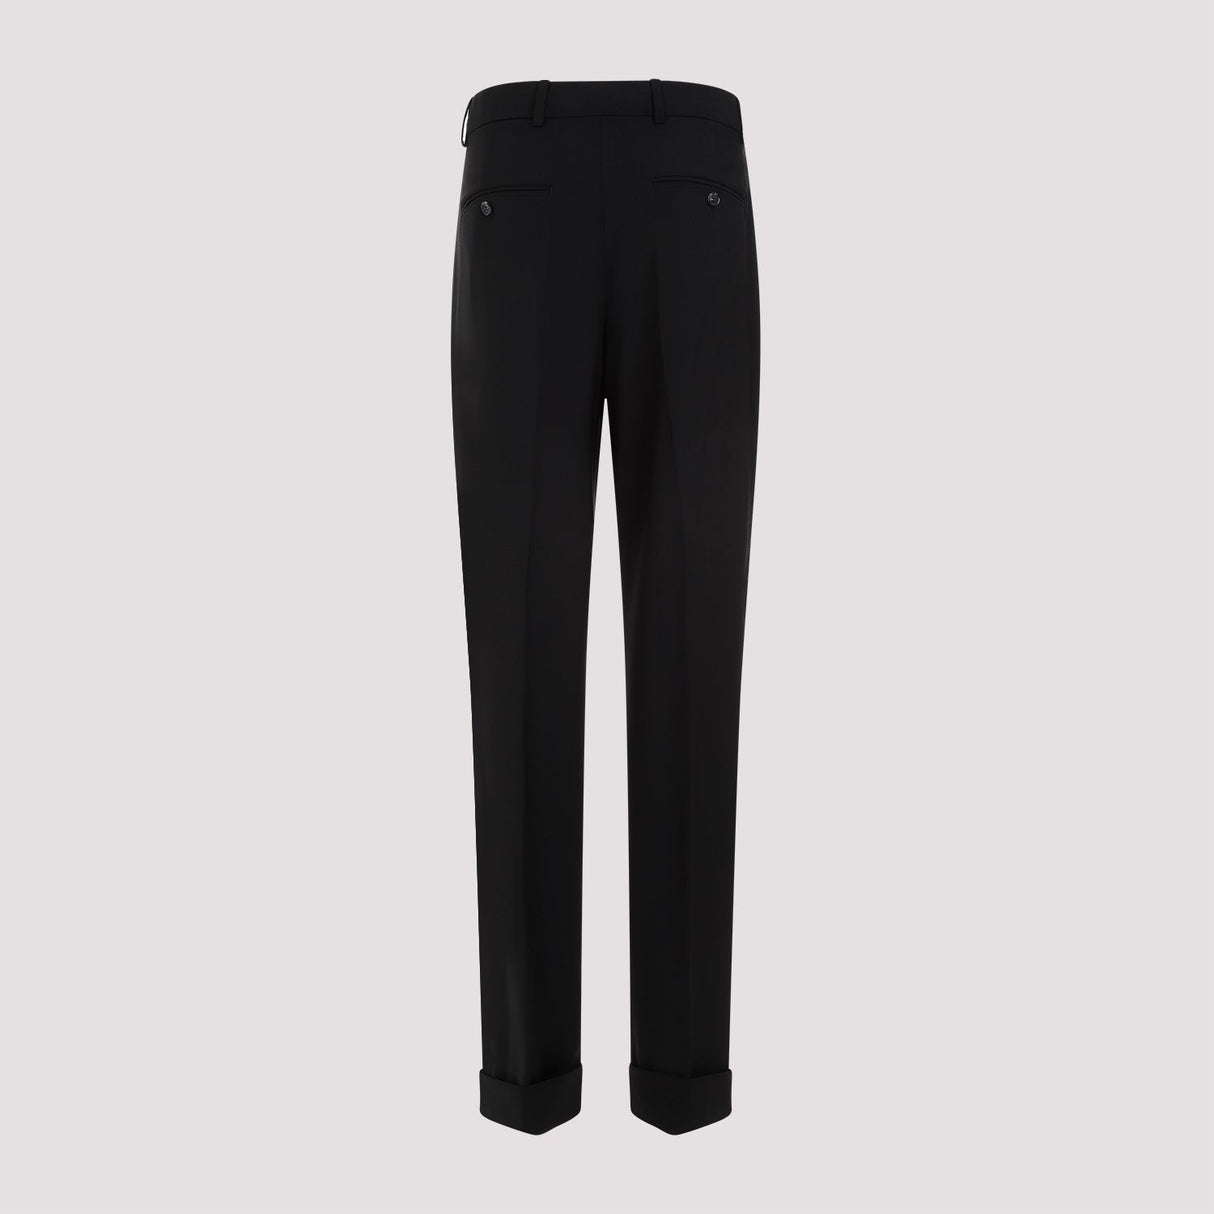 MAX MARA SPORTMAX Stylish Black Wool Pants for Women - SS24